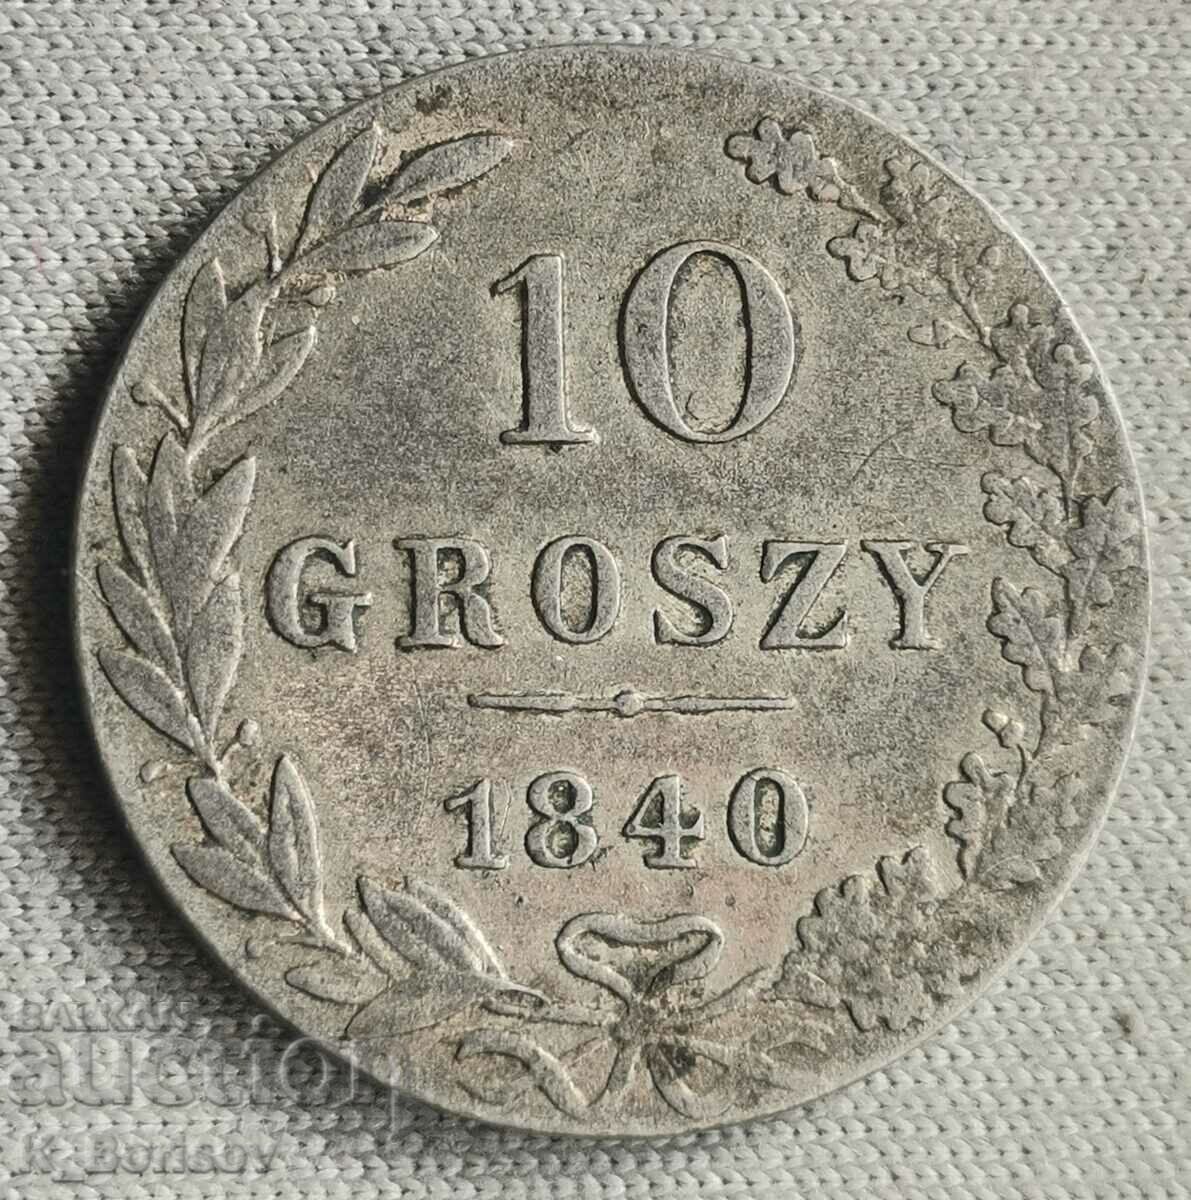 Ρωσικό μερίδιο της Πολωνίας 10 groshy 1840